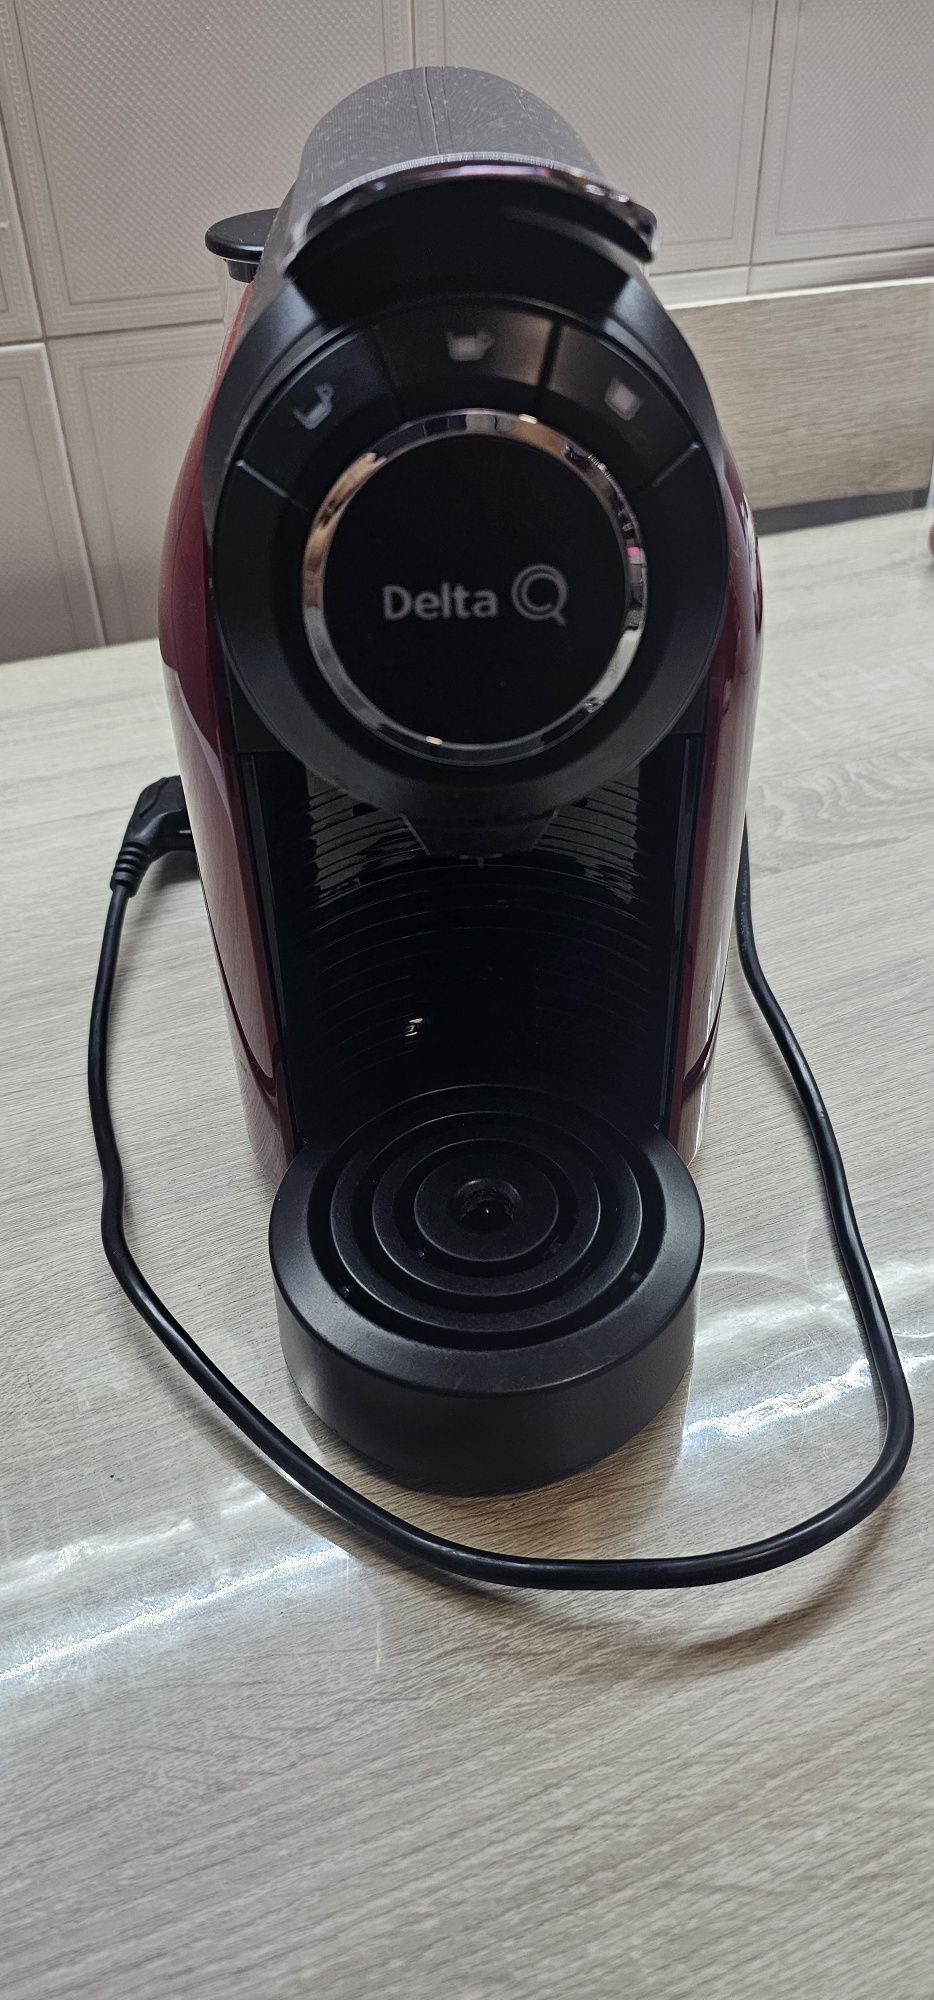 Oportunidade  - Máquina de café Delta Q